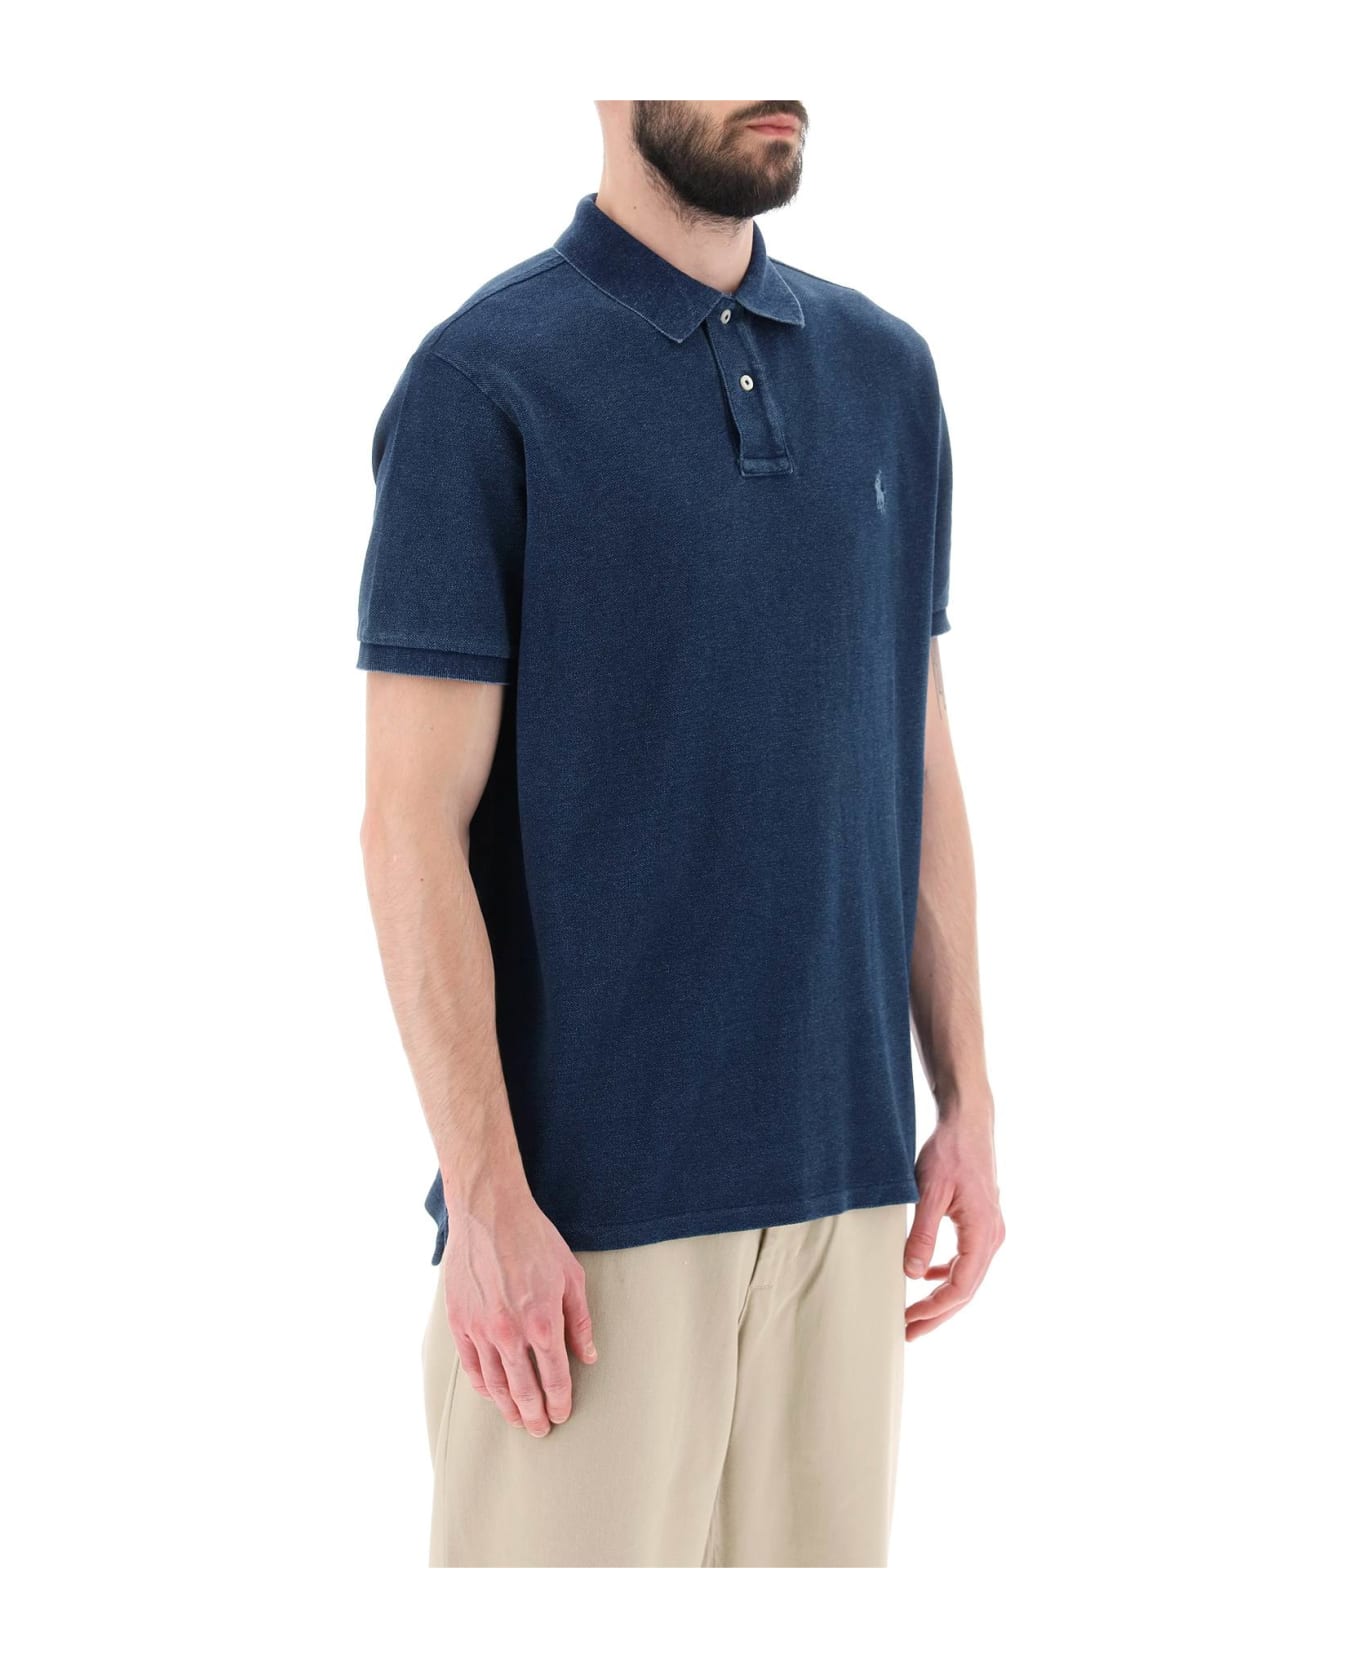 Polo Ralph Lauren Pique Cotton Polo Shirt - DARK INDIGO (Blue)